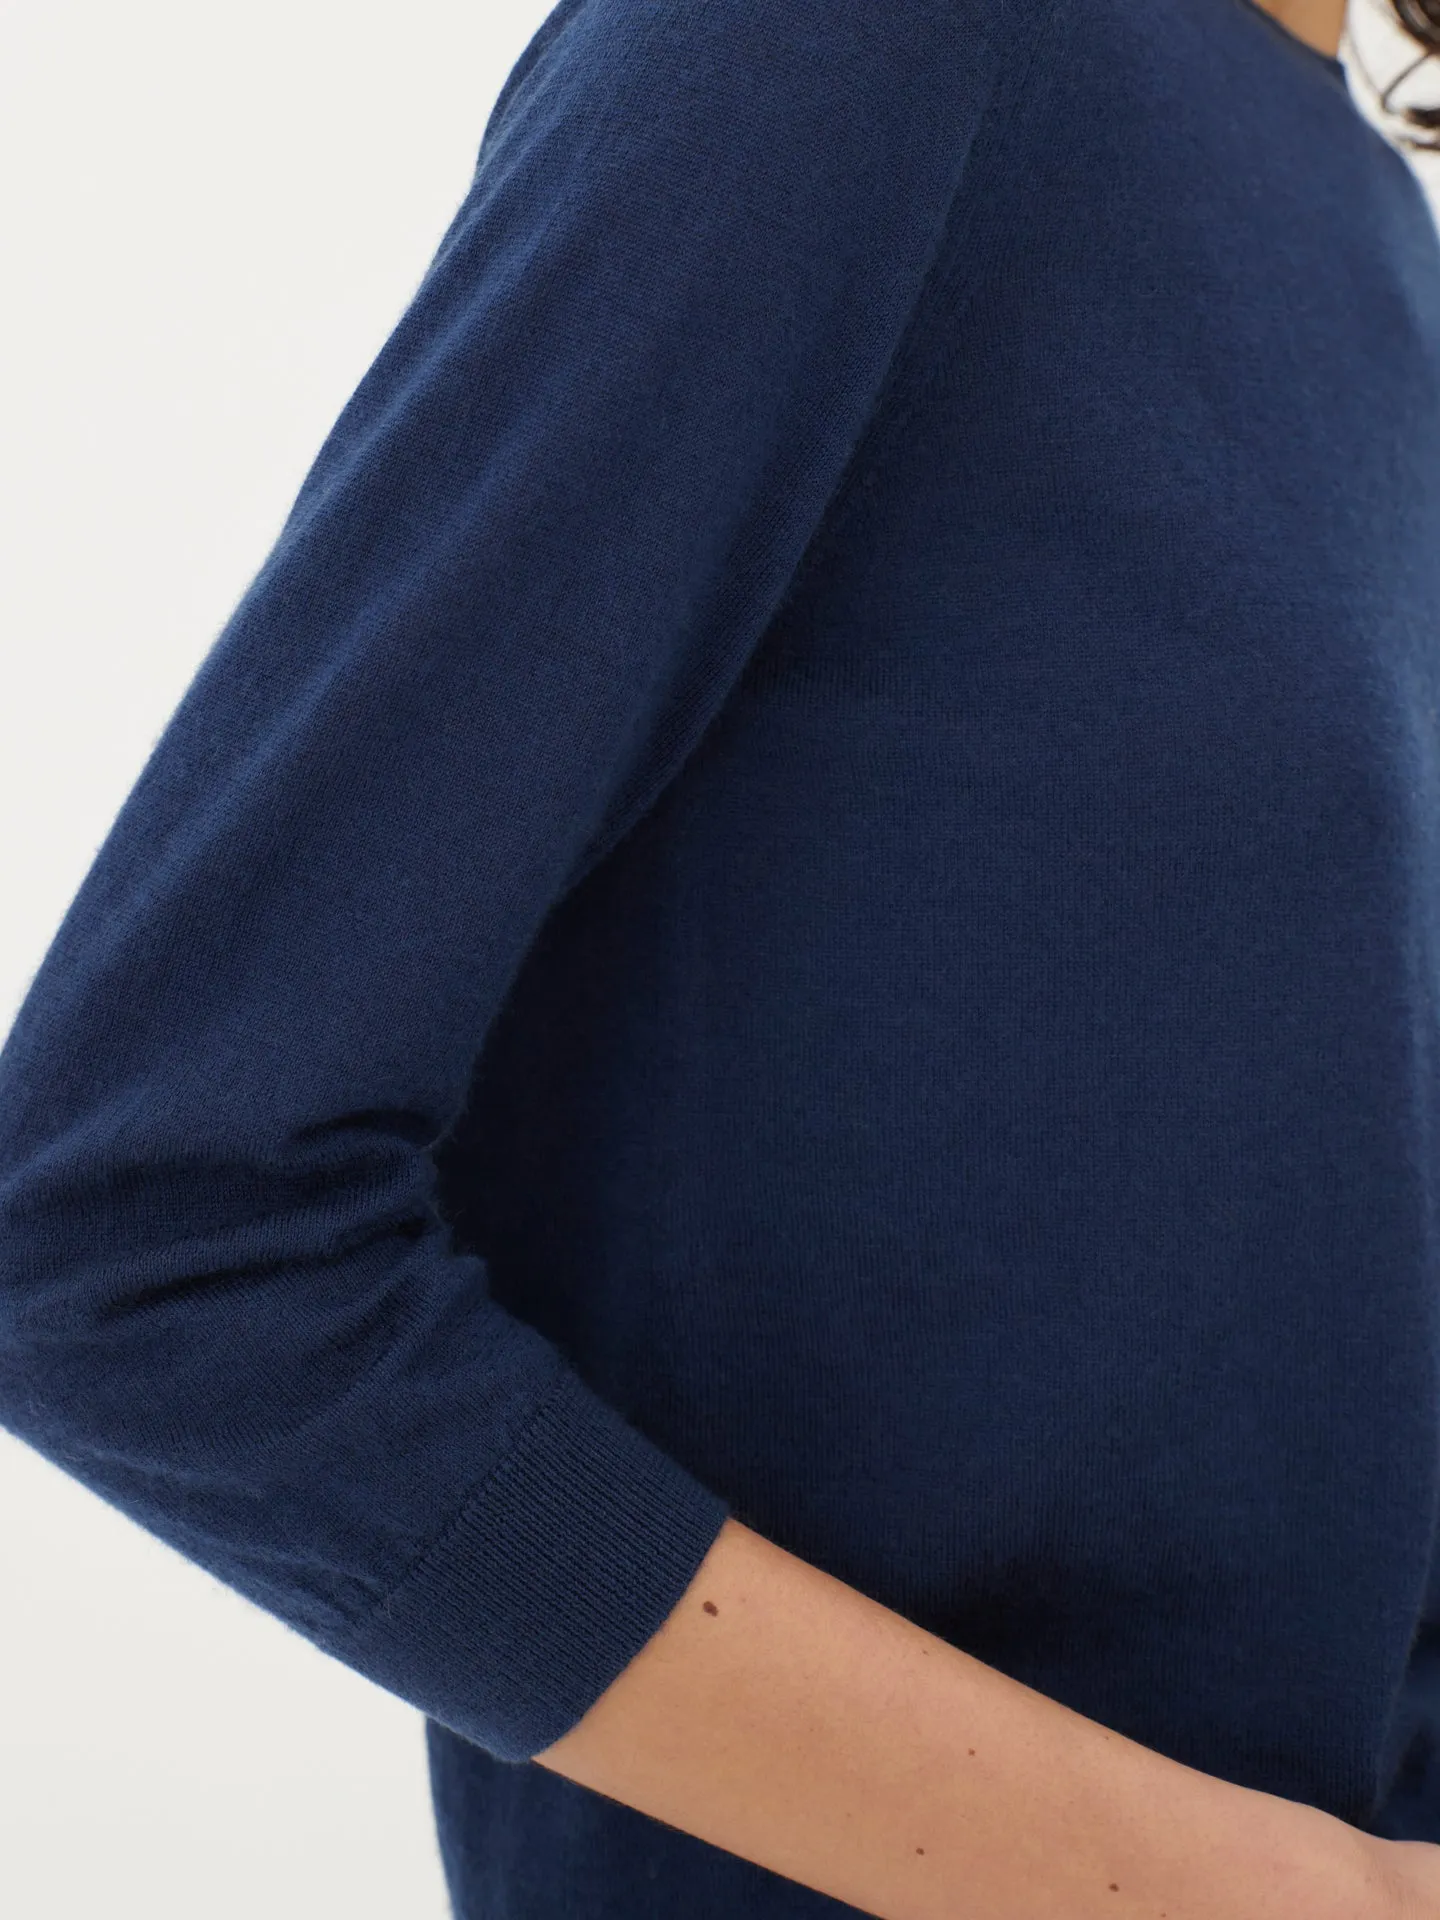 Women's Silk Cashmere Short-Sleeved R-Neck Top Navy - Gobi Cashmere